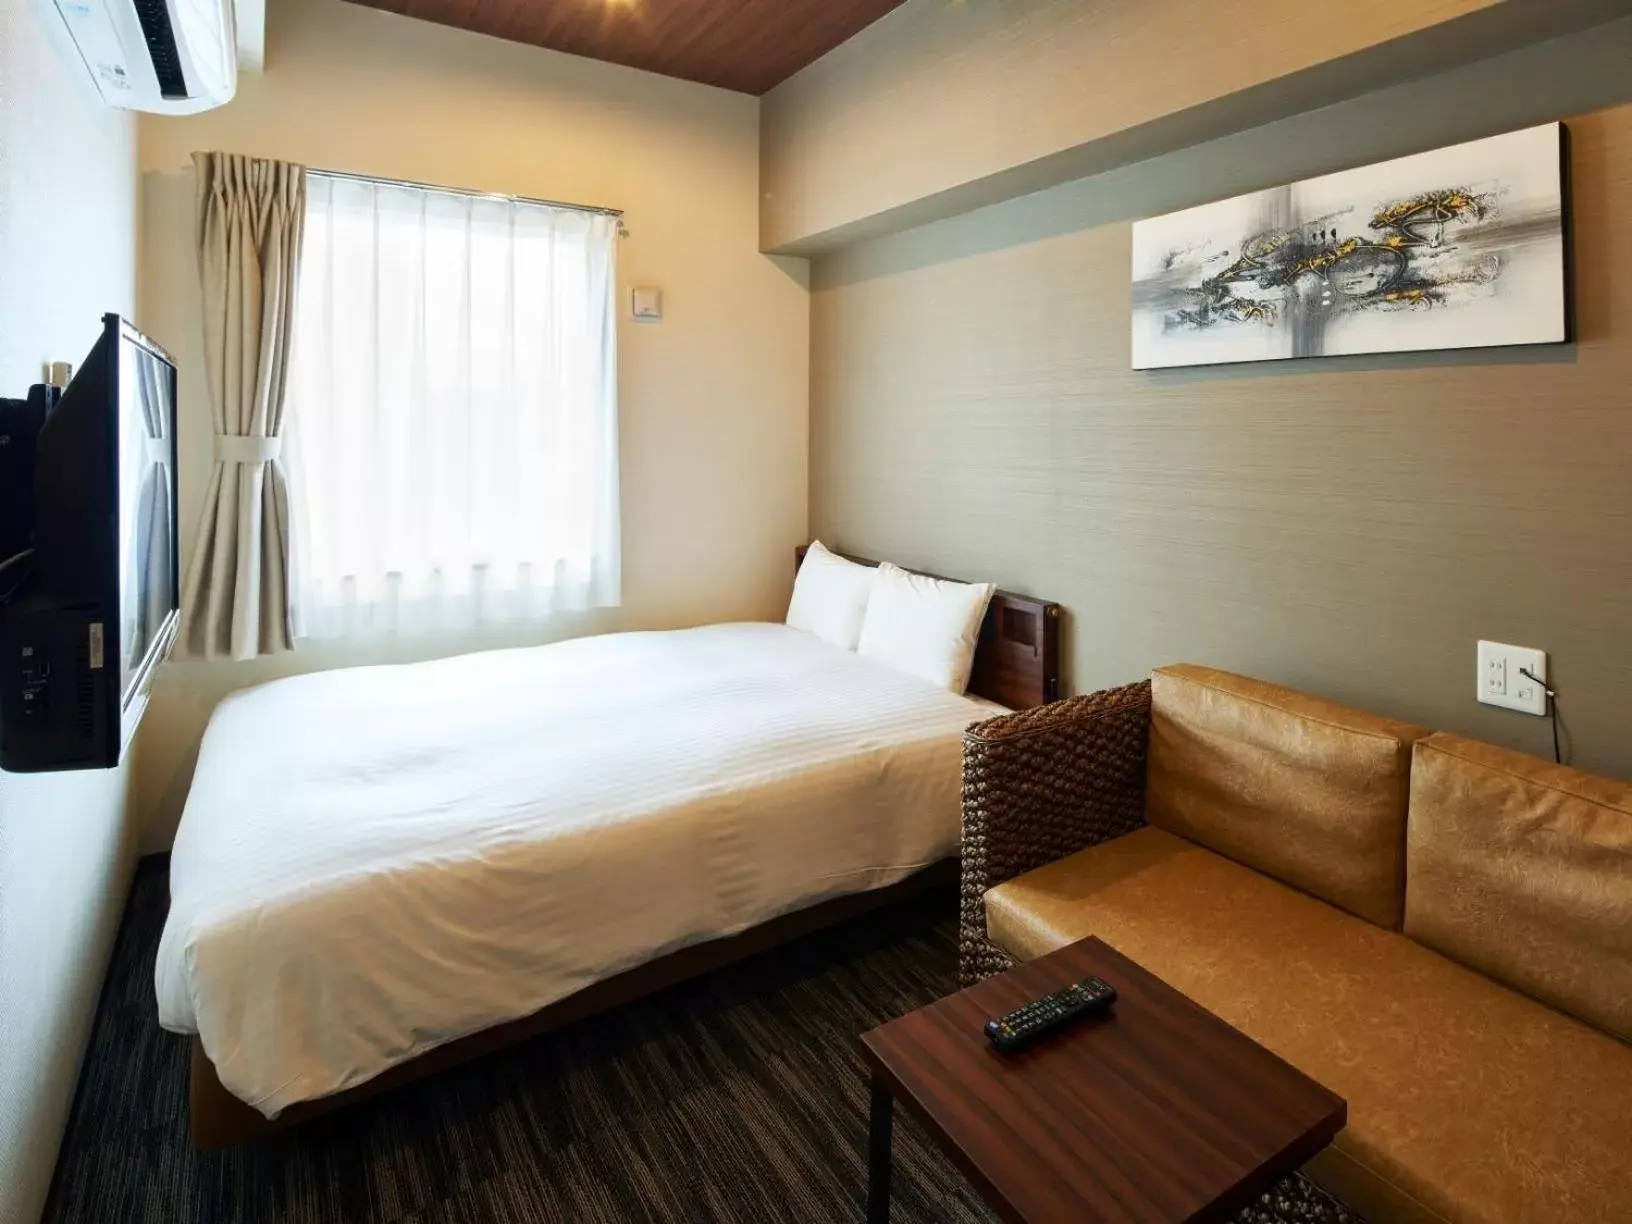 Bed in One's Hotel Fukuoka